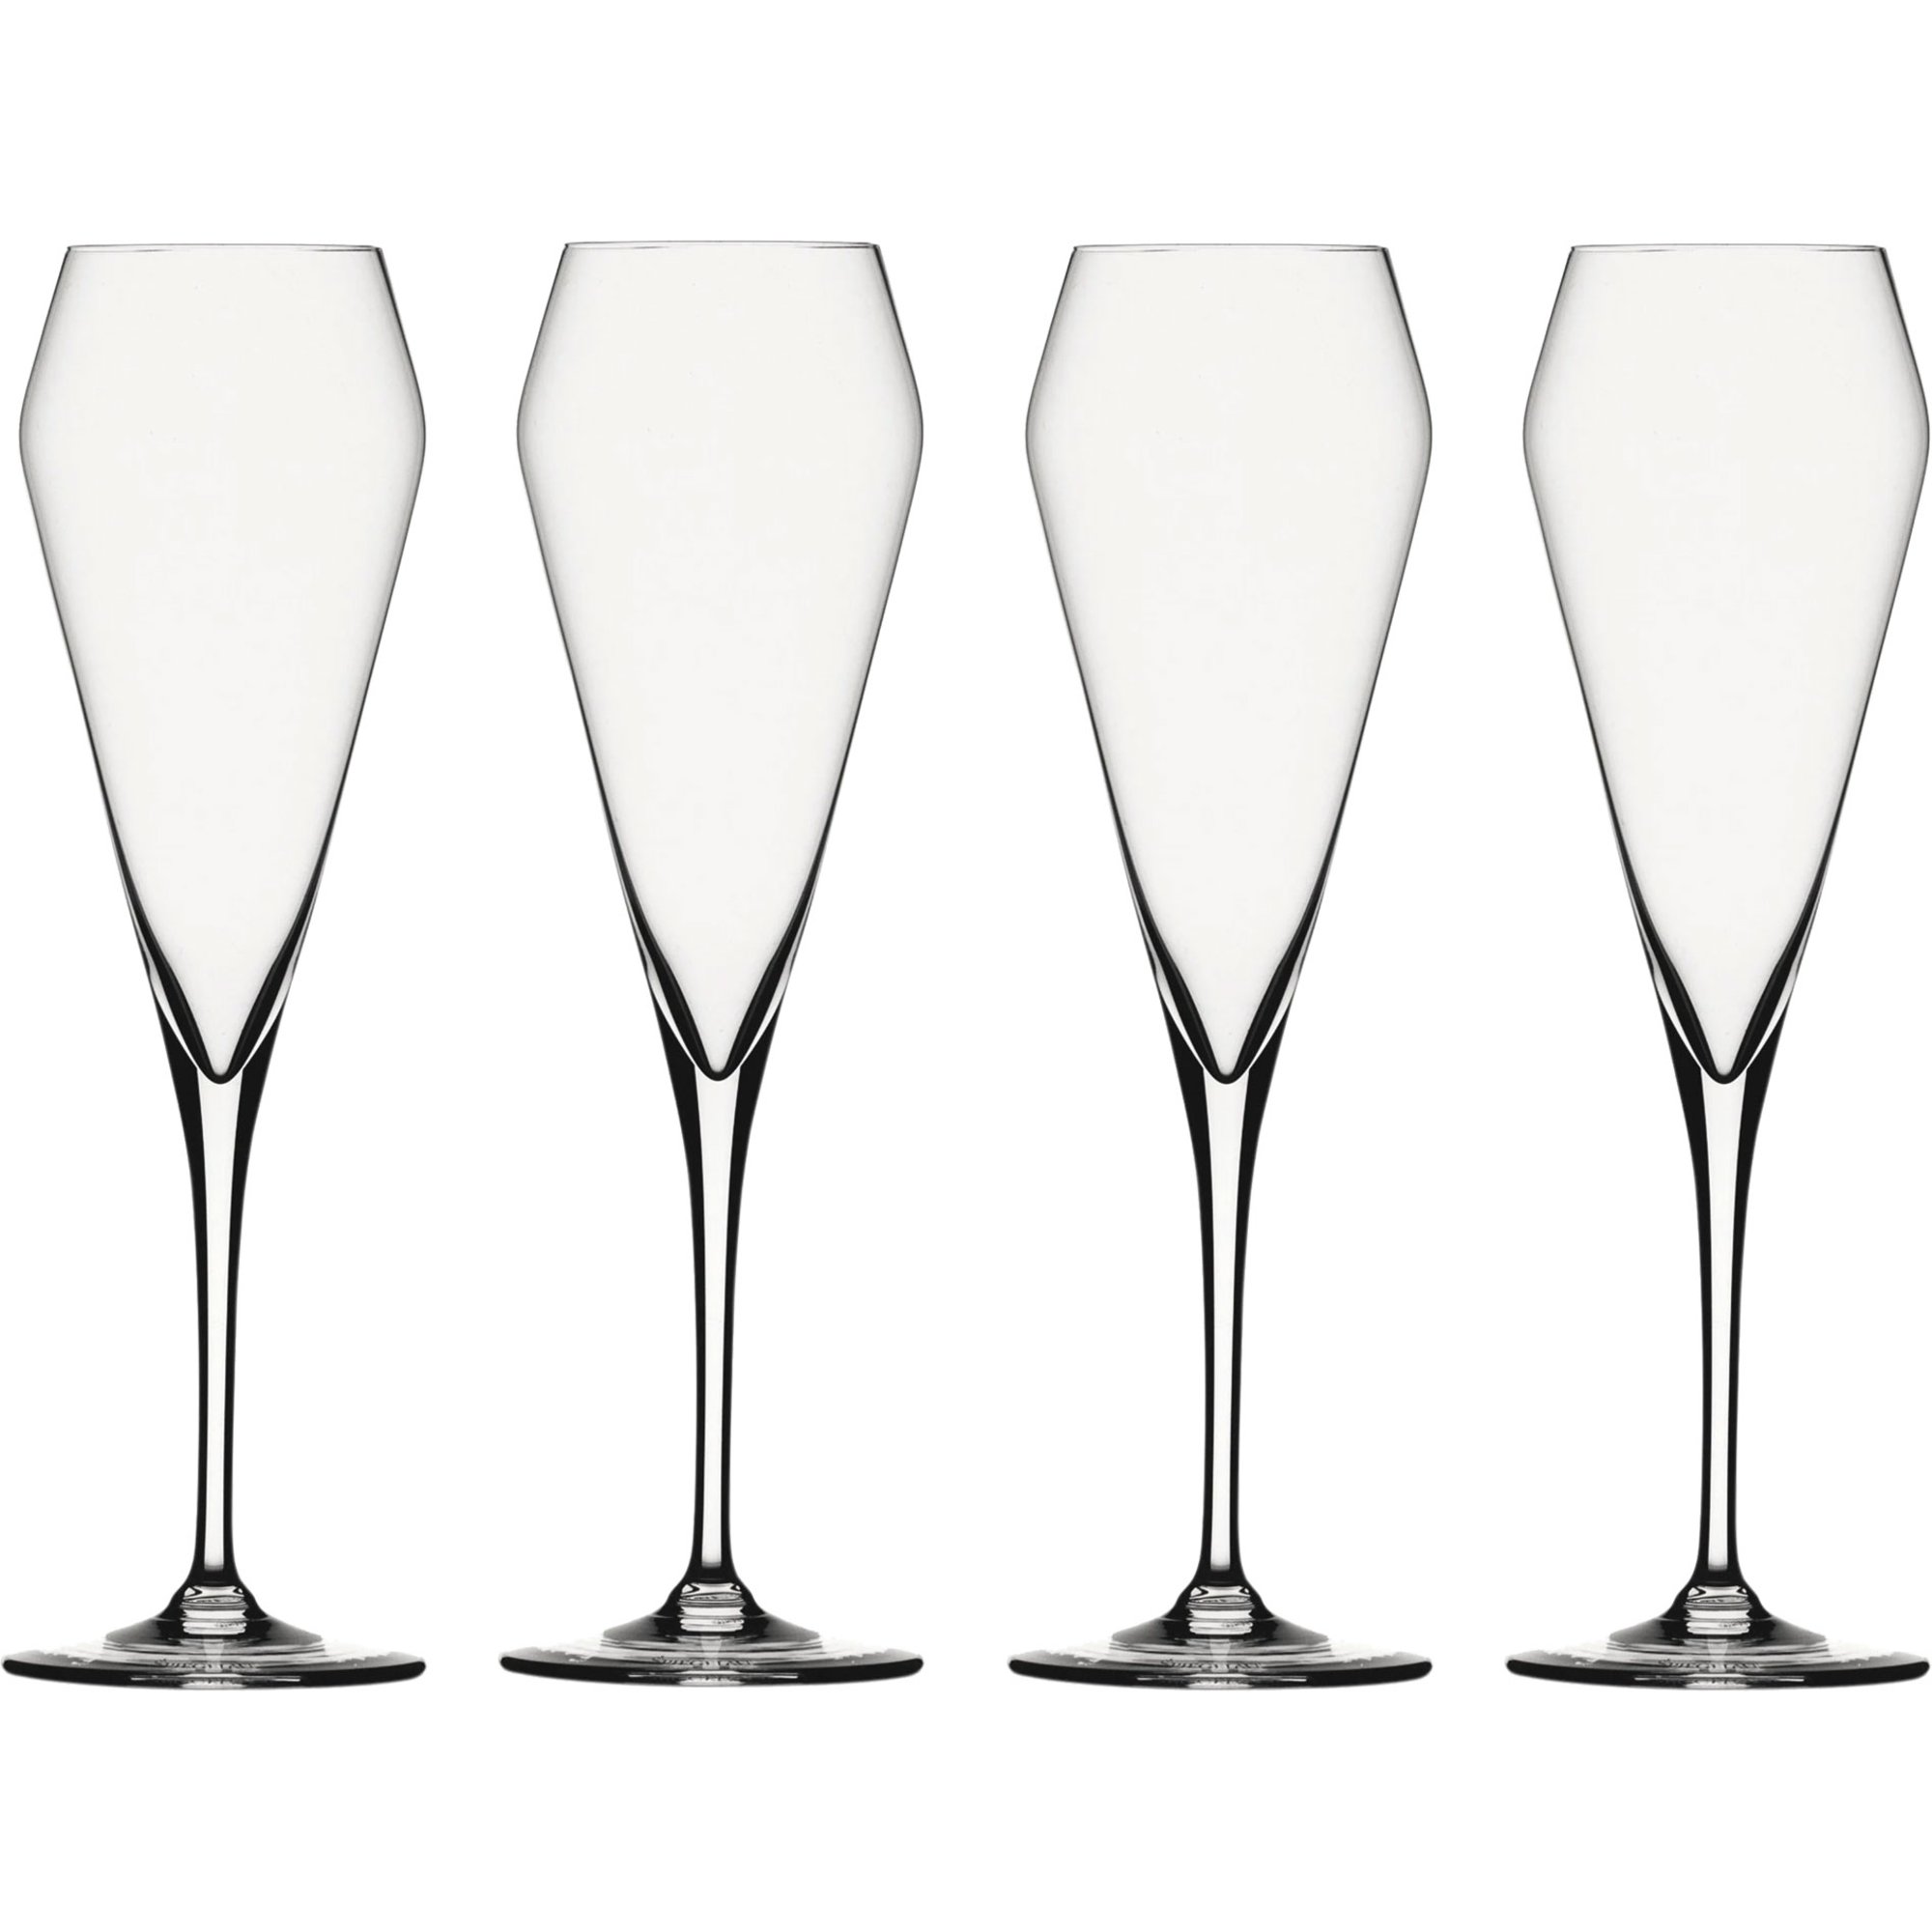 Spiegelau Willsberger Anniversary Champagneglas, 4-pak